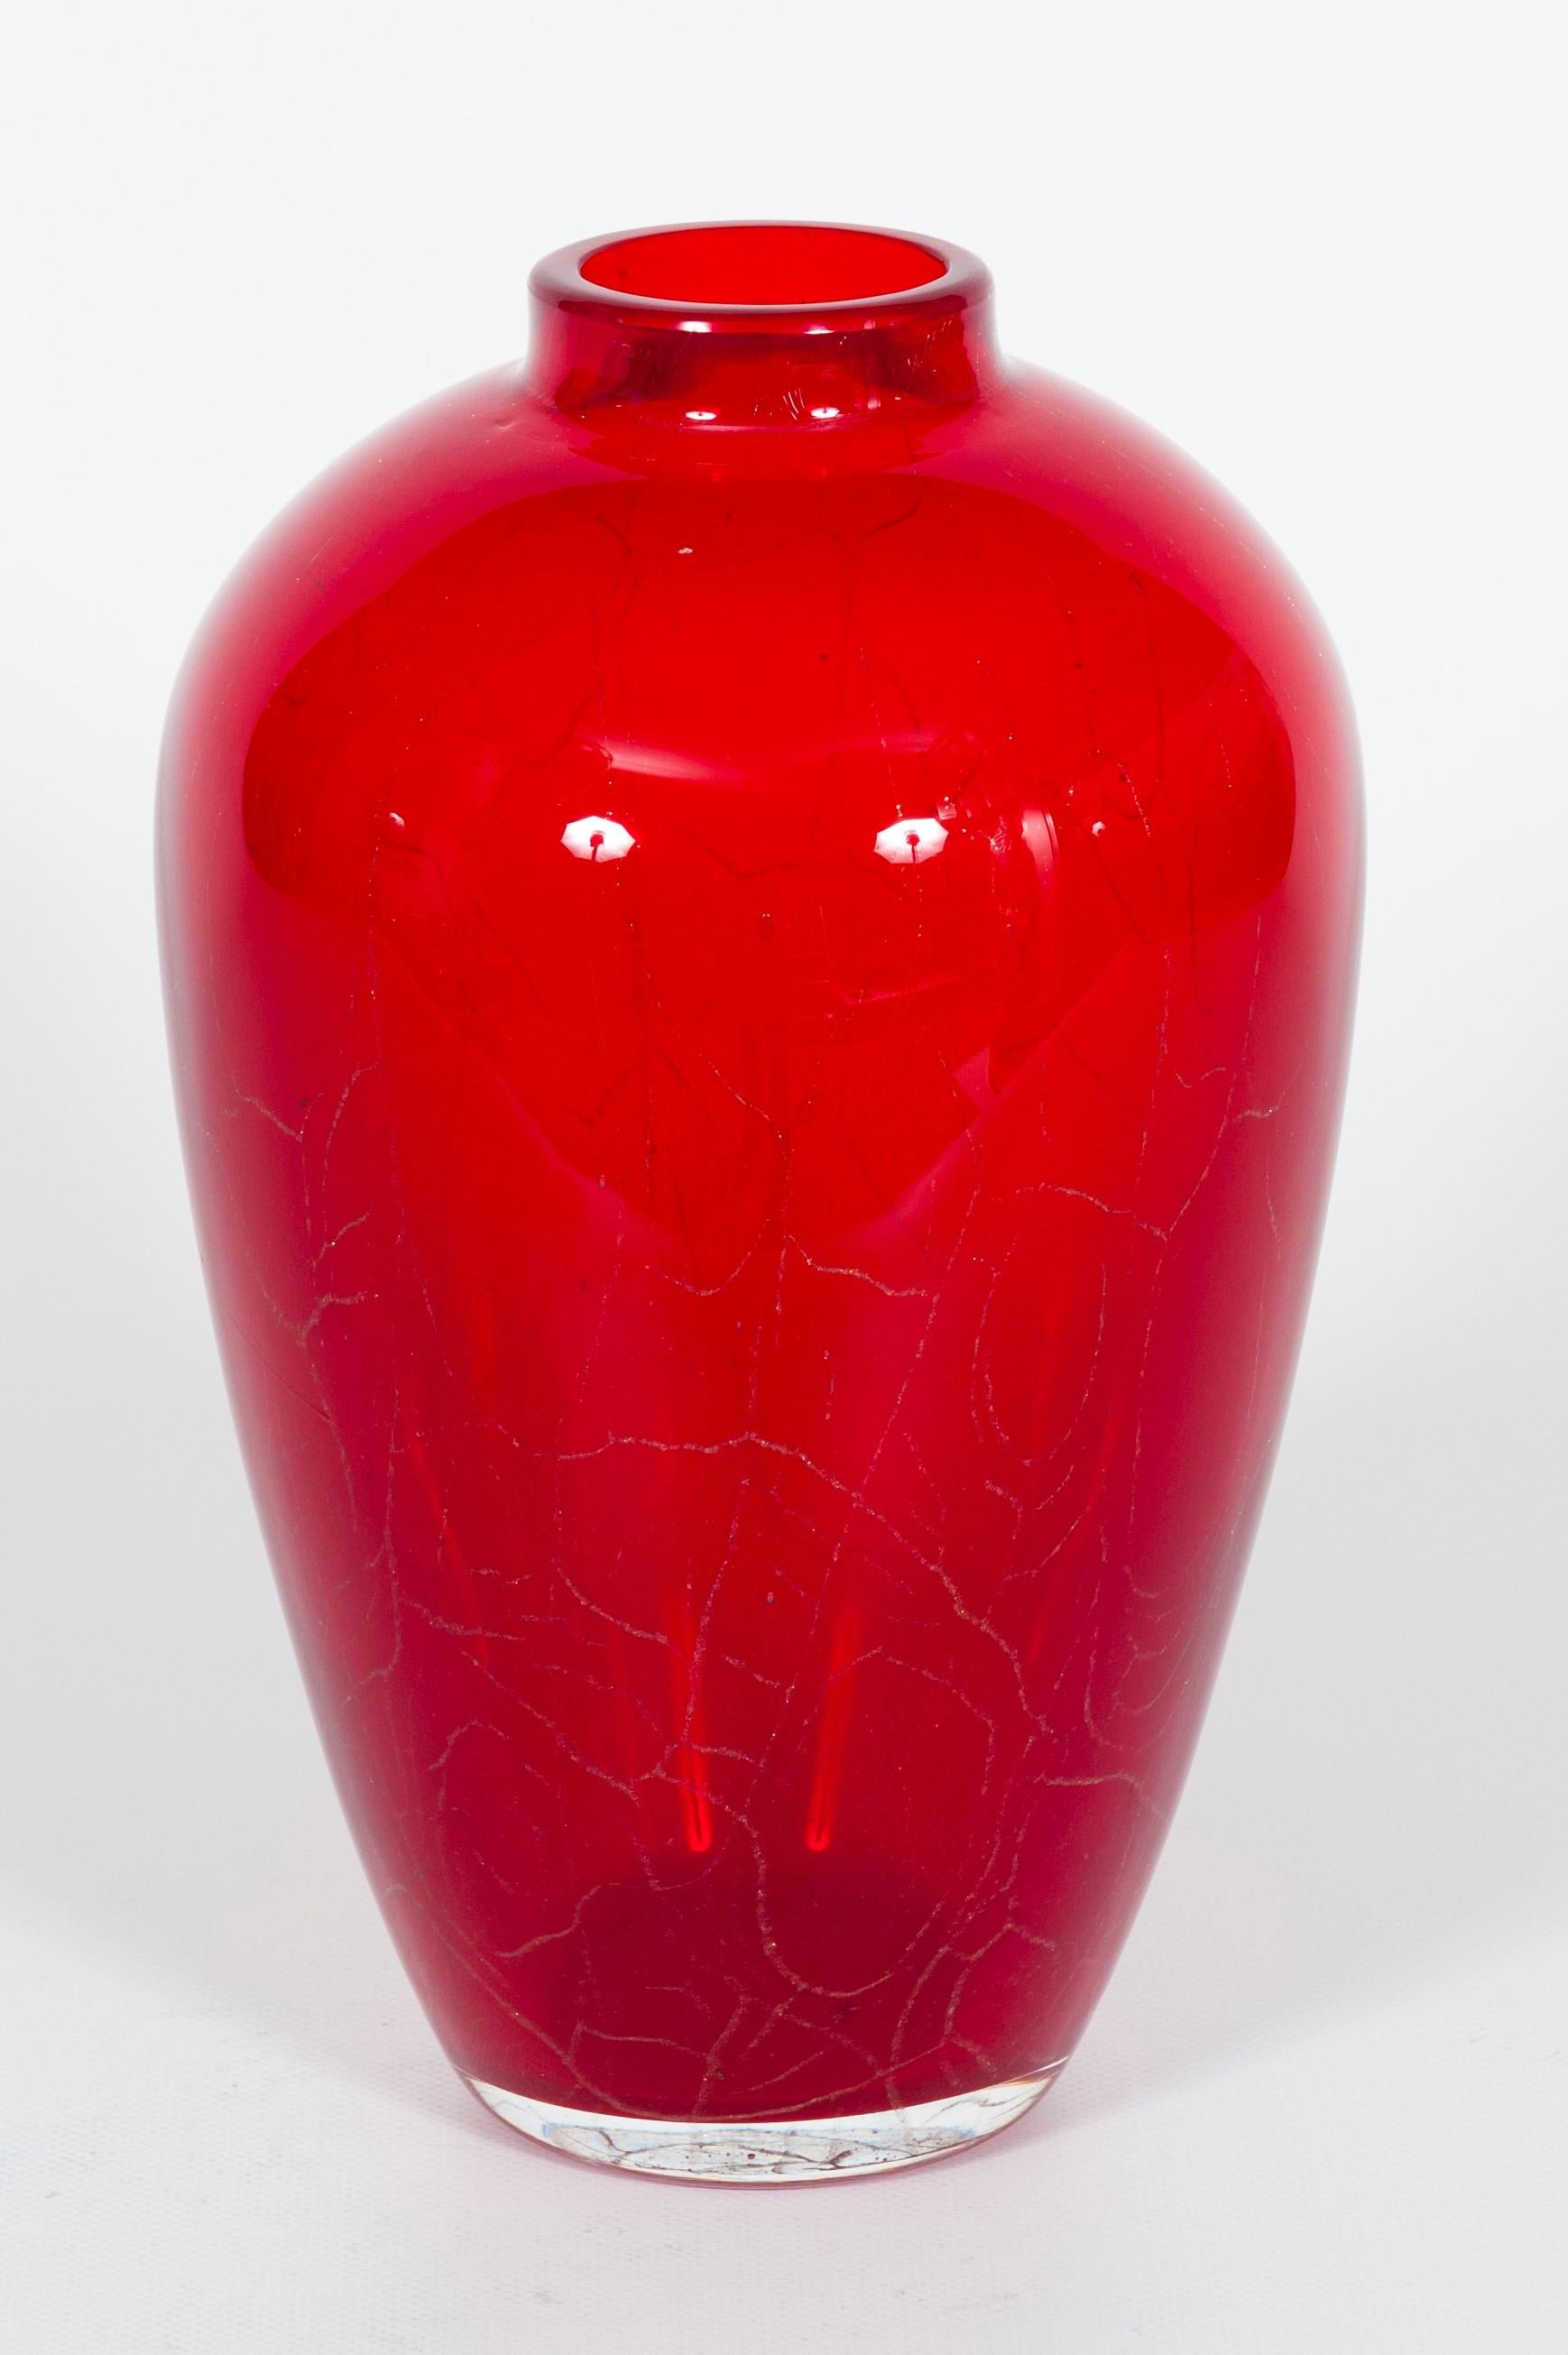 Vintage Vase aus rotem Murano-Glas mit Sommerso-Gold, zugeschrieben Seguso 1950er Jahre.
Es handelt sich um eine außergewöhnliche Vase italienischen Designs, die sich durch ihre harmonische und zarte Form, ihre intensive rubinrote Farbe und die